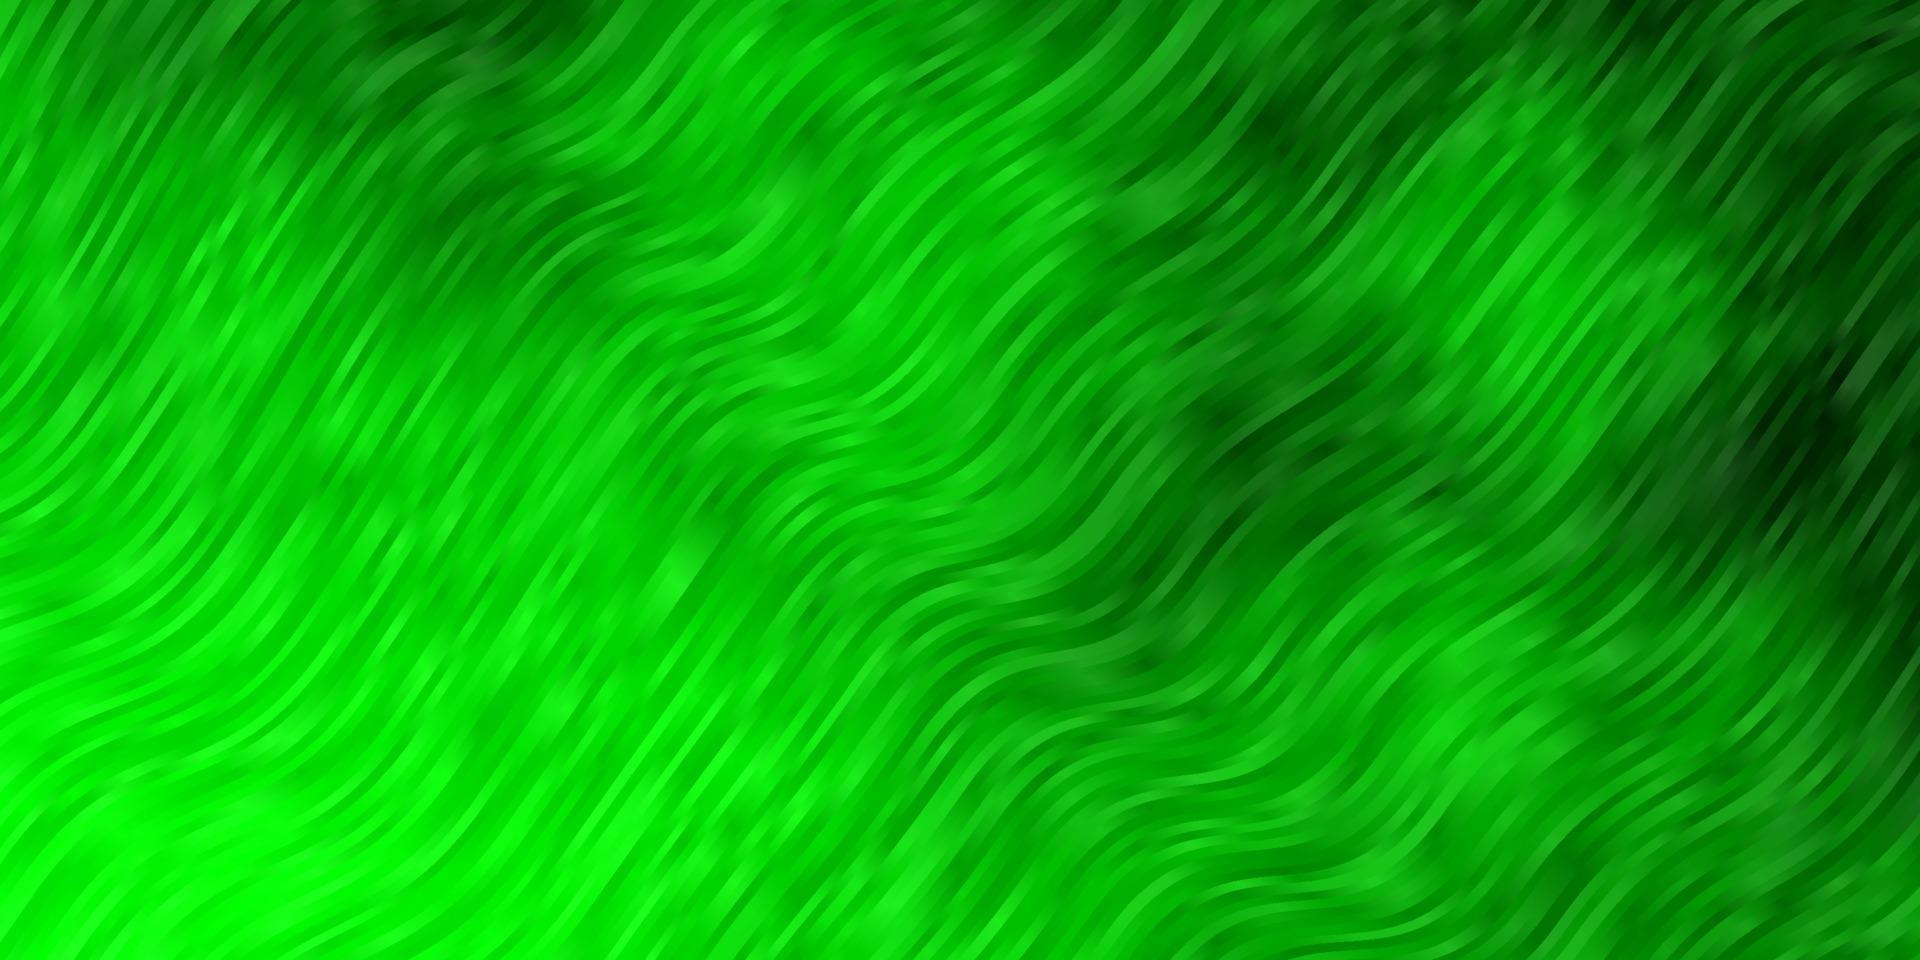 plantilla de vector verde claro con líneas.